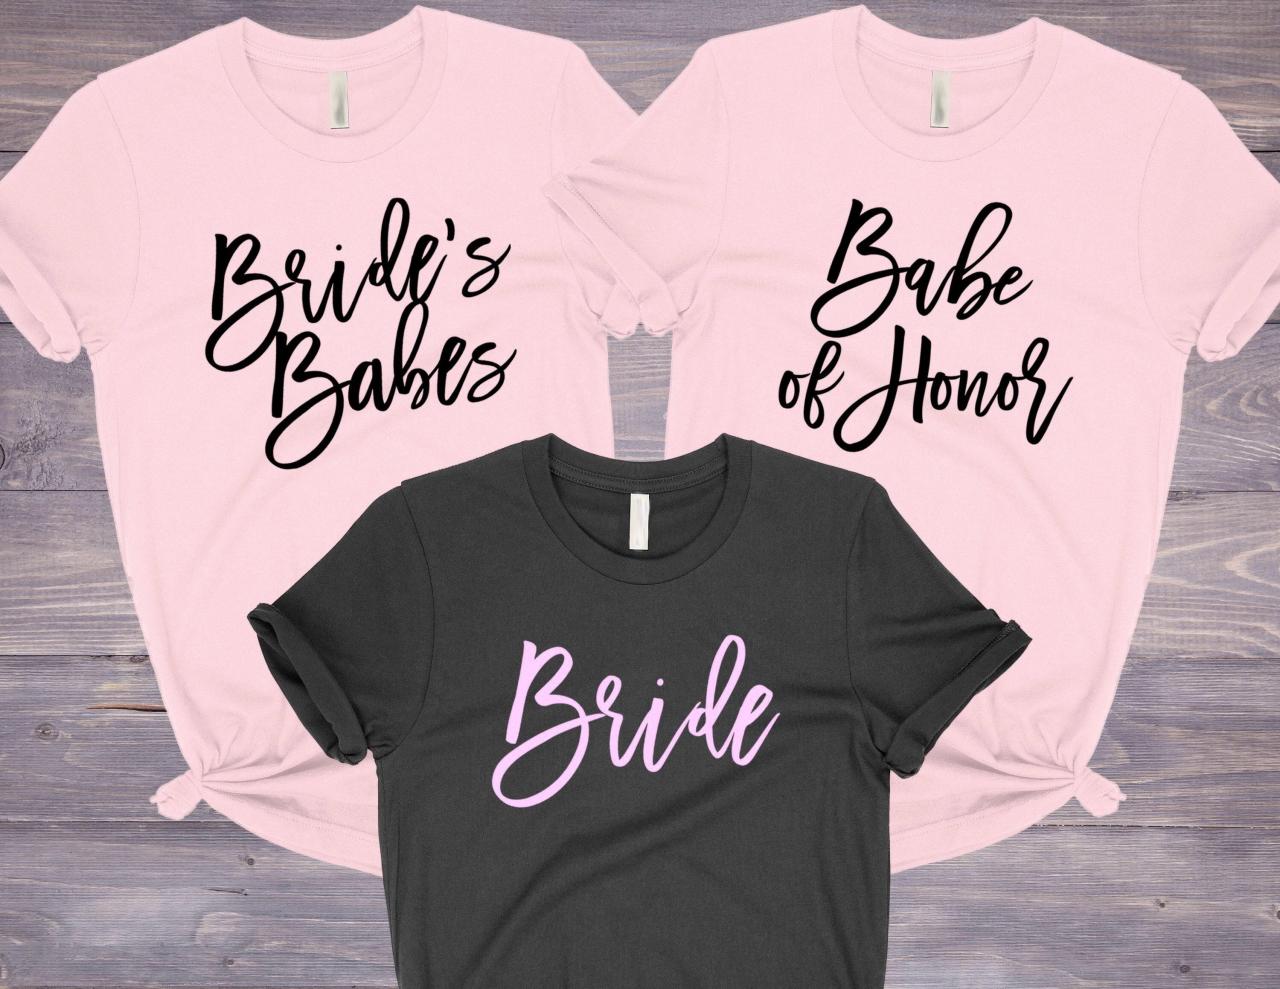 Bridesmaid Shirts, Brides Babes Shirts, Babe Of Honor, Bachelorette Party Shirts, Bridesmaid Proposal, Bridesmaid Gift, Bridal Party Shirts